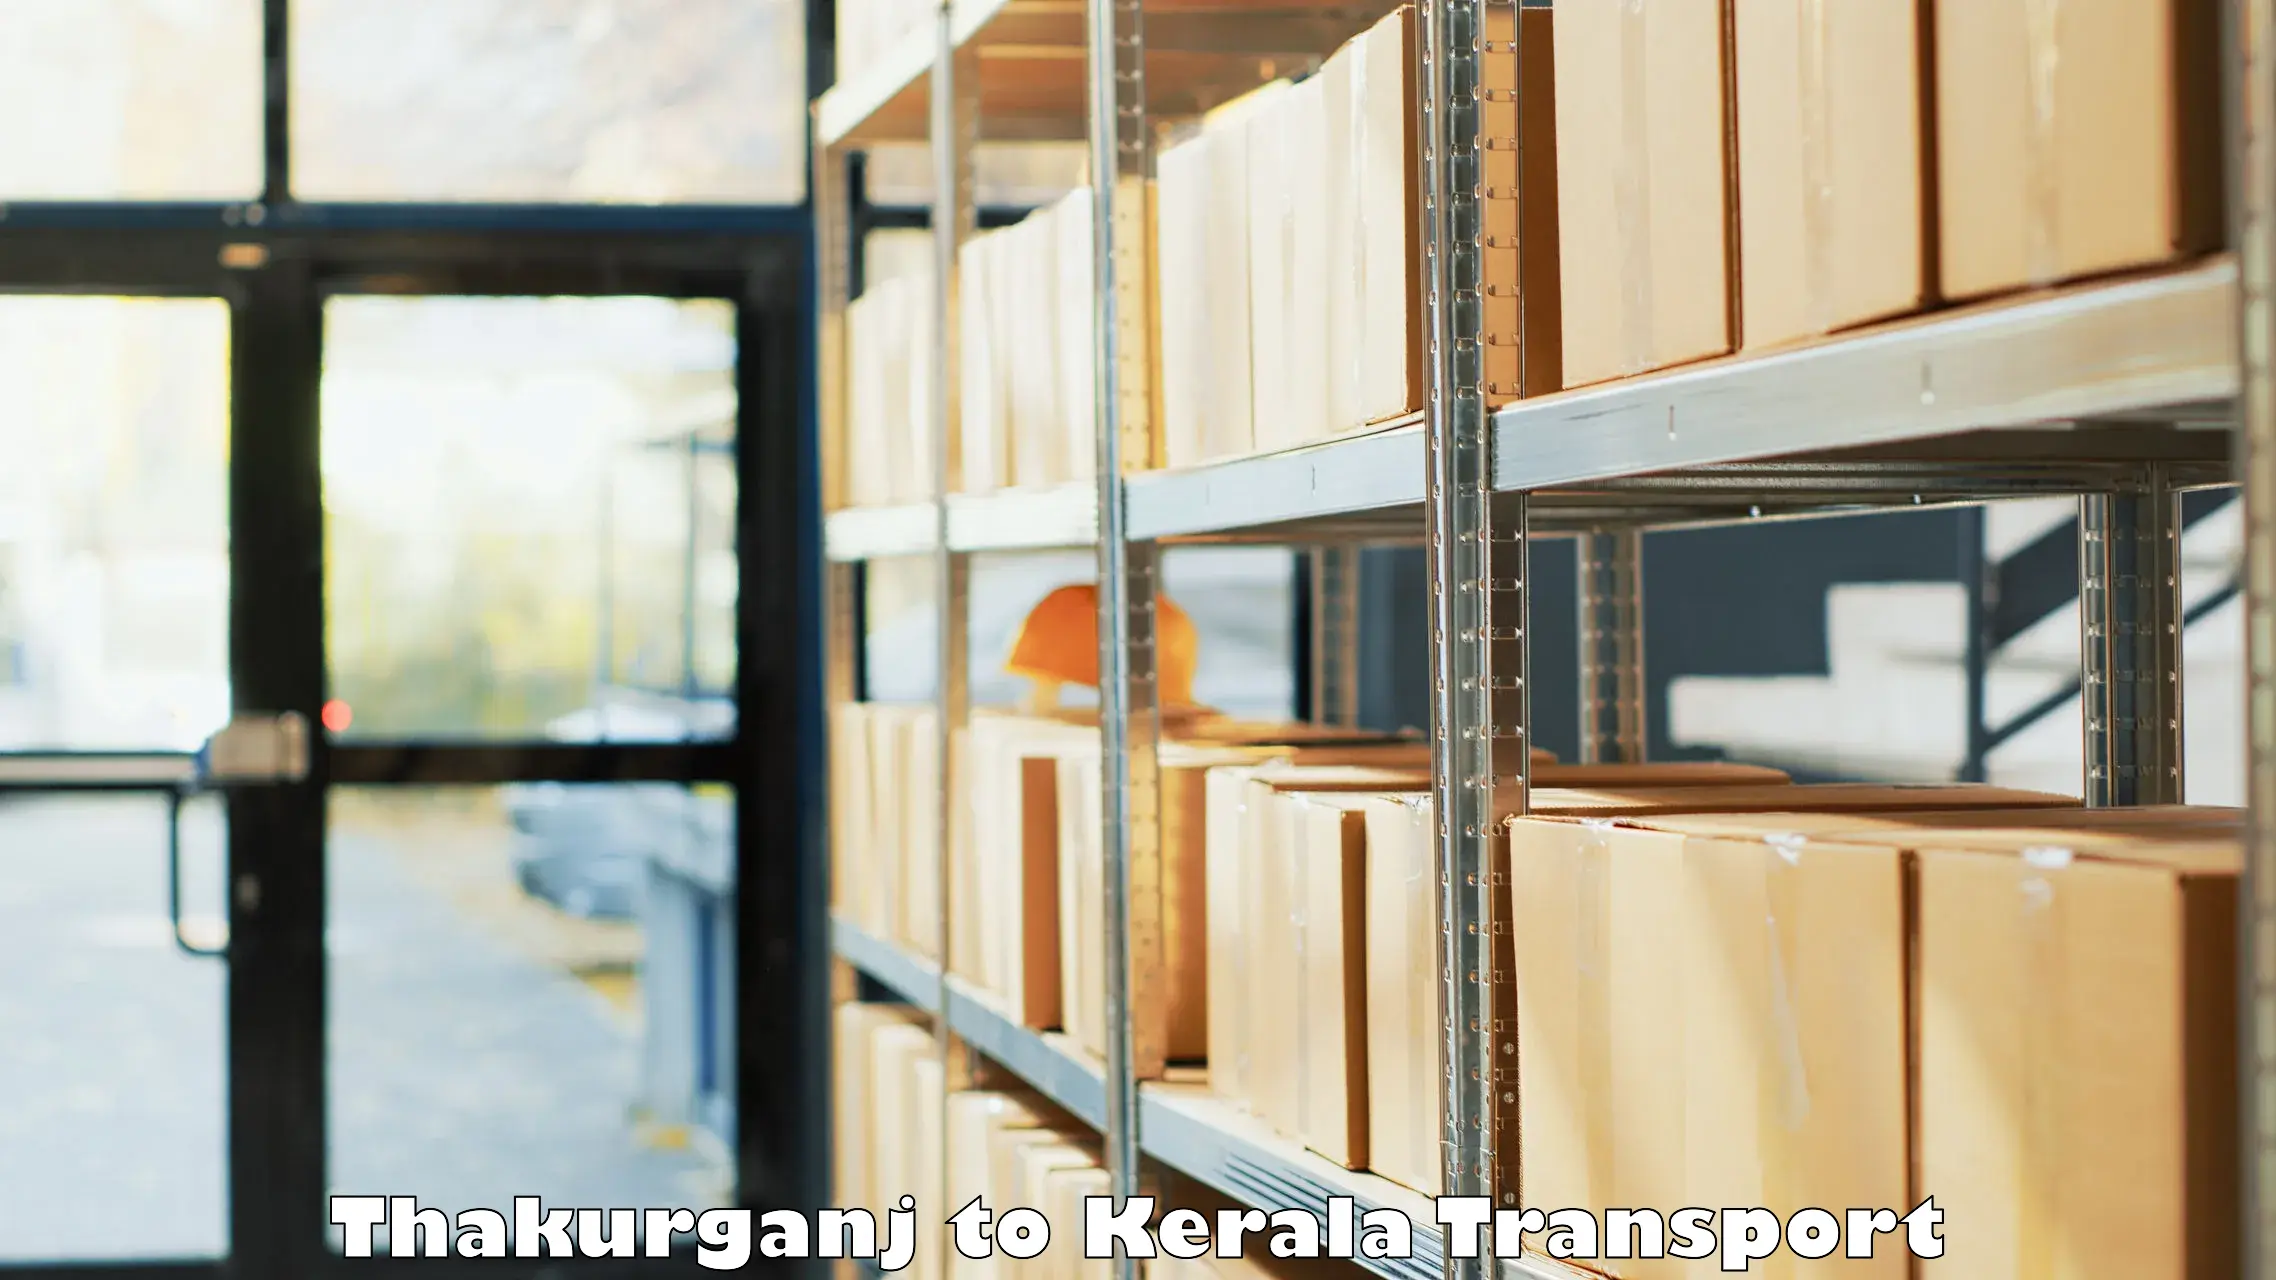 Online transport booking Thakurganj to Chiramanangad